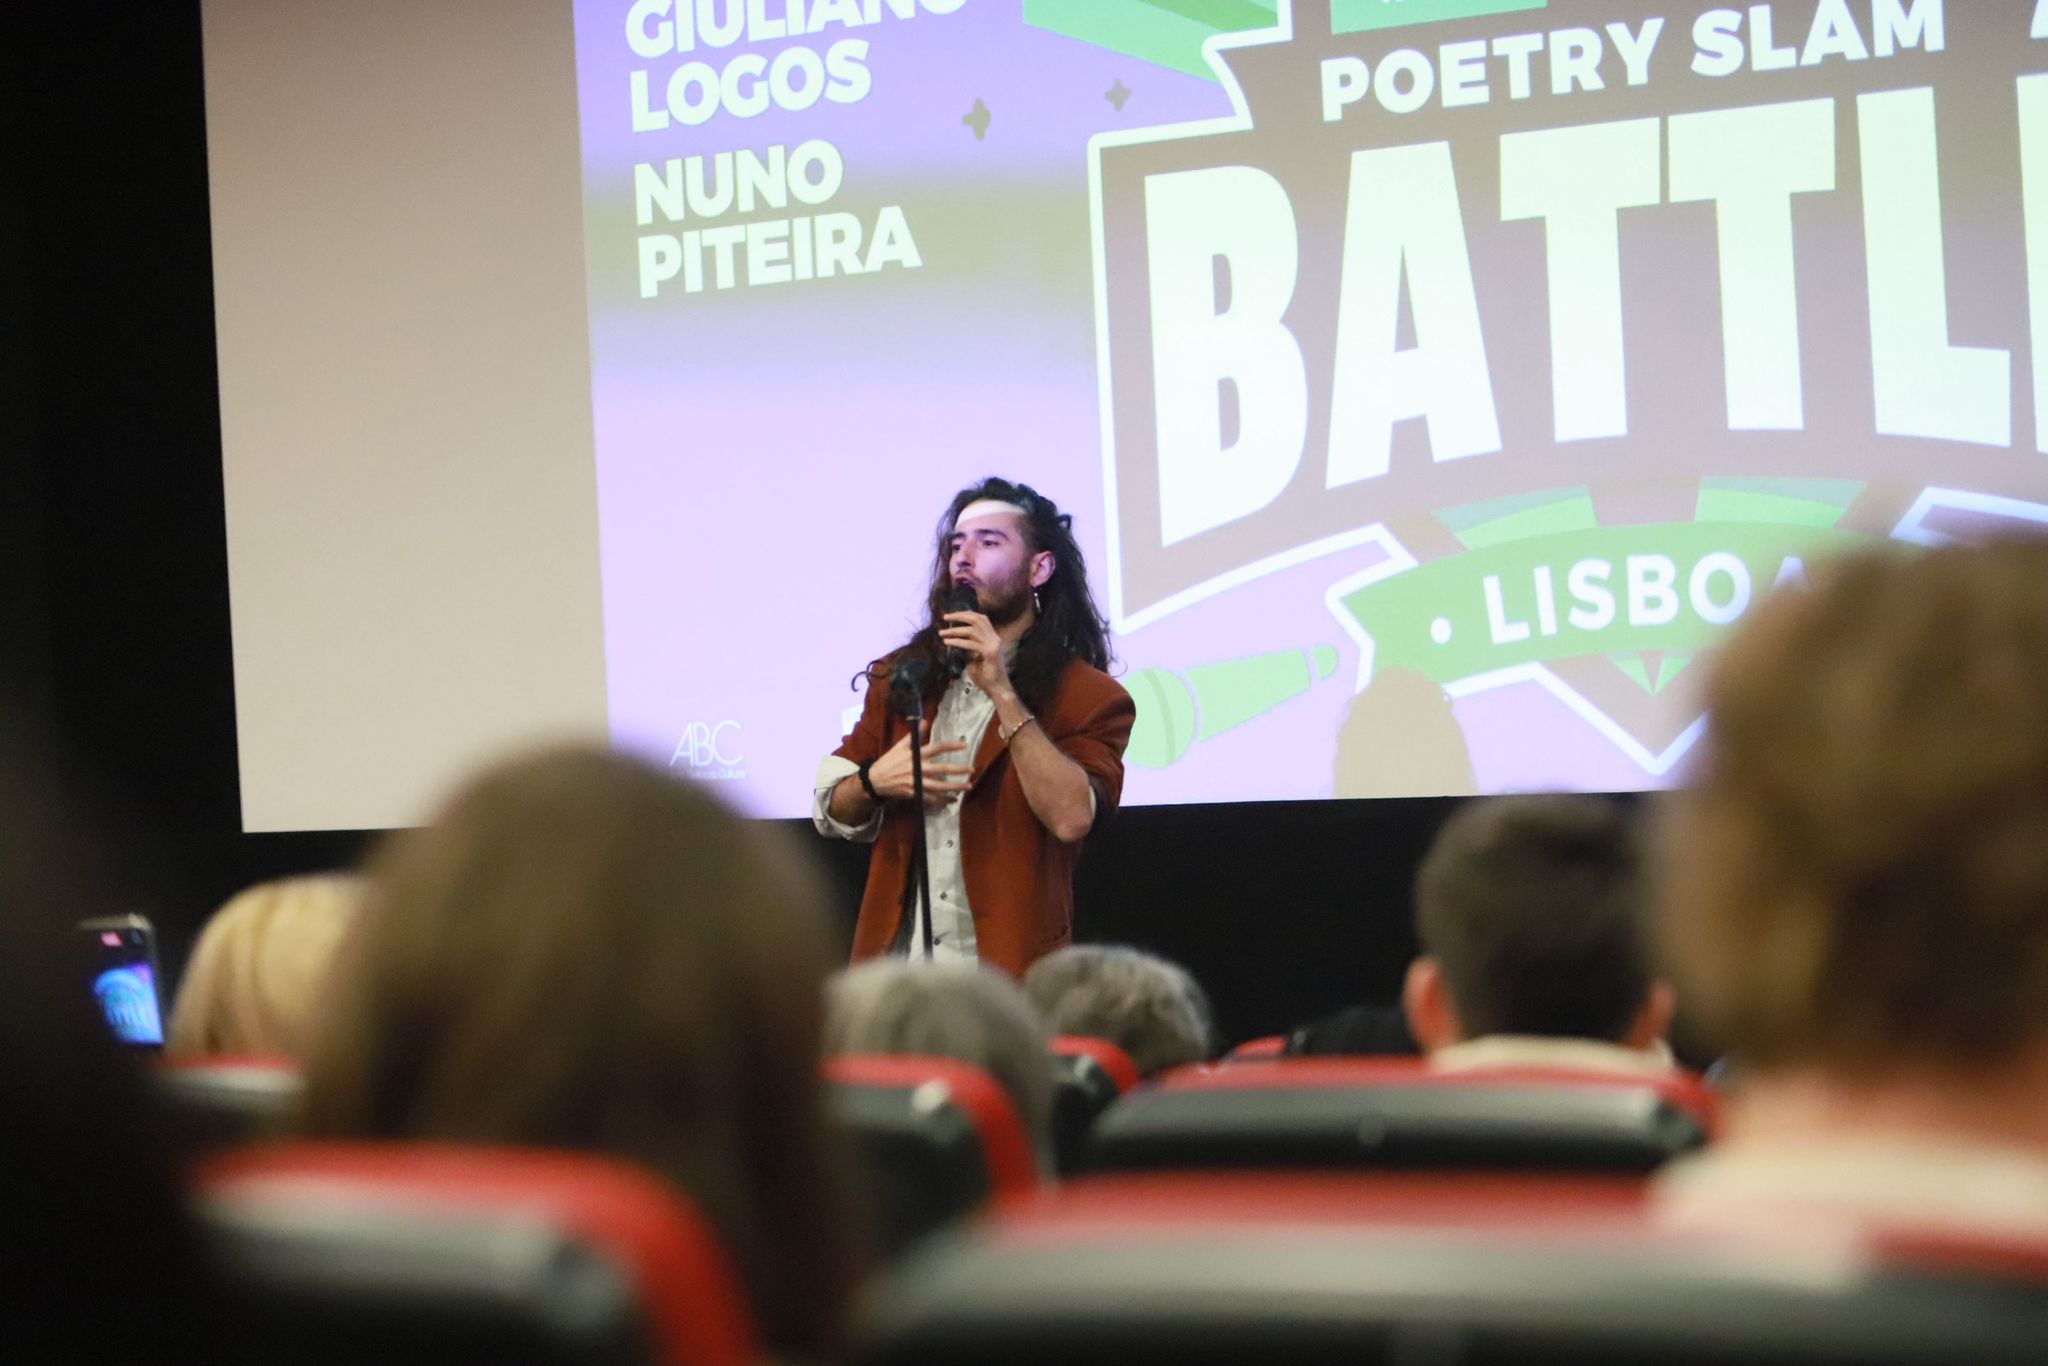 PROGETTI SCUOLA ABC: La slam poetry battle del campione mondiale Giuliano Logos sbarca a Lisbona
